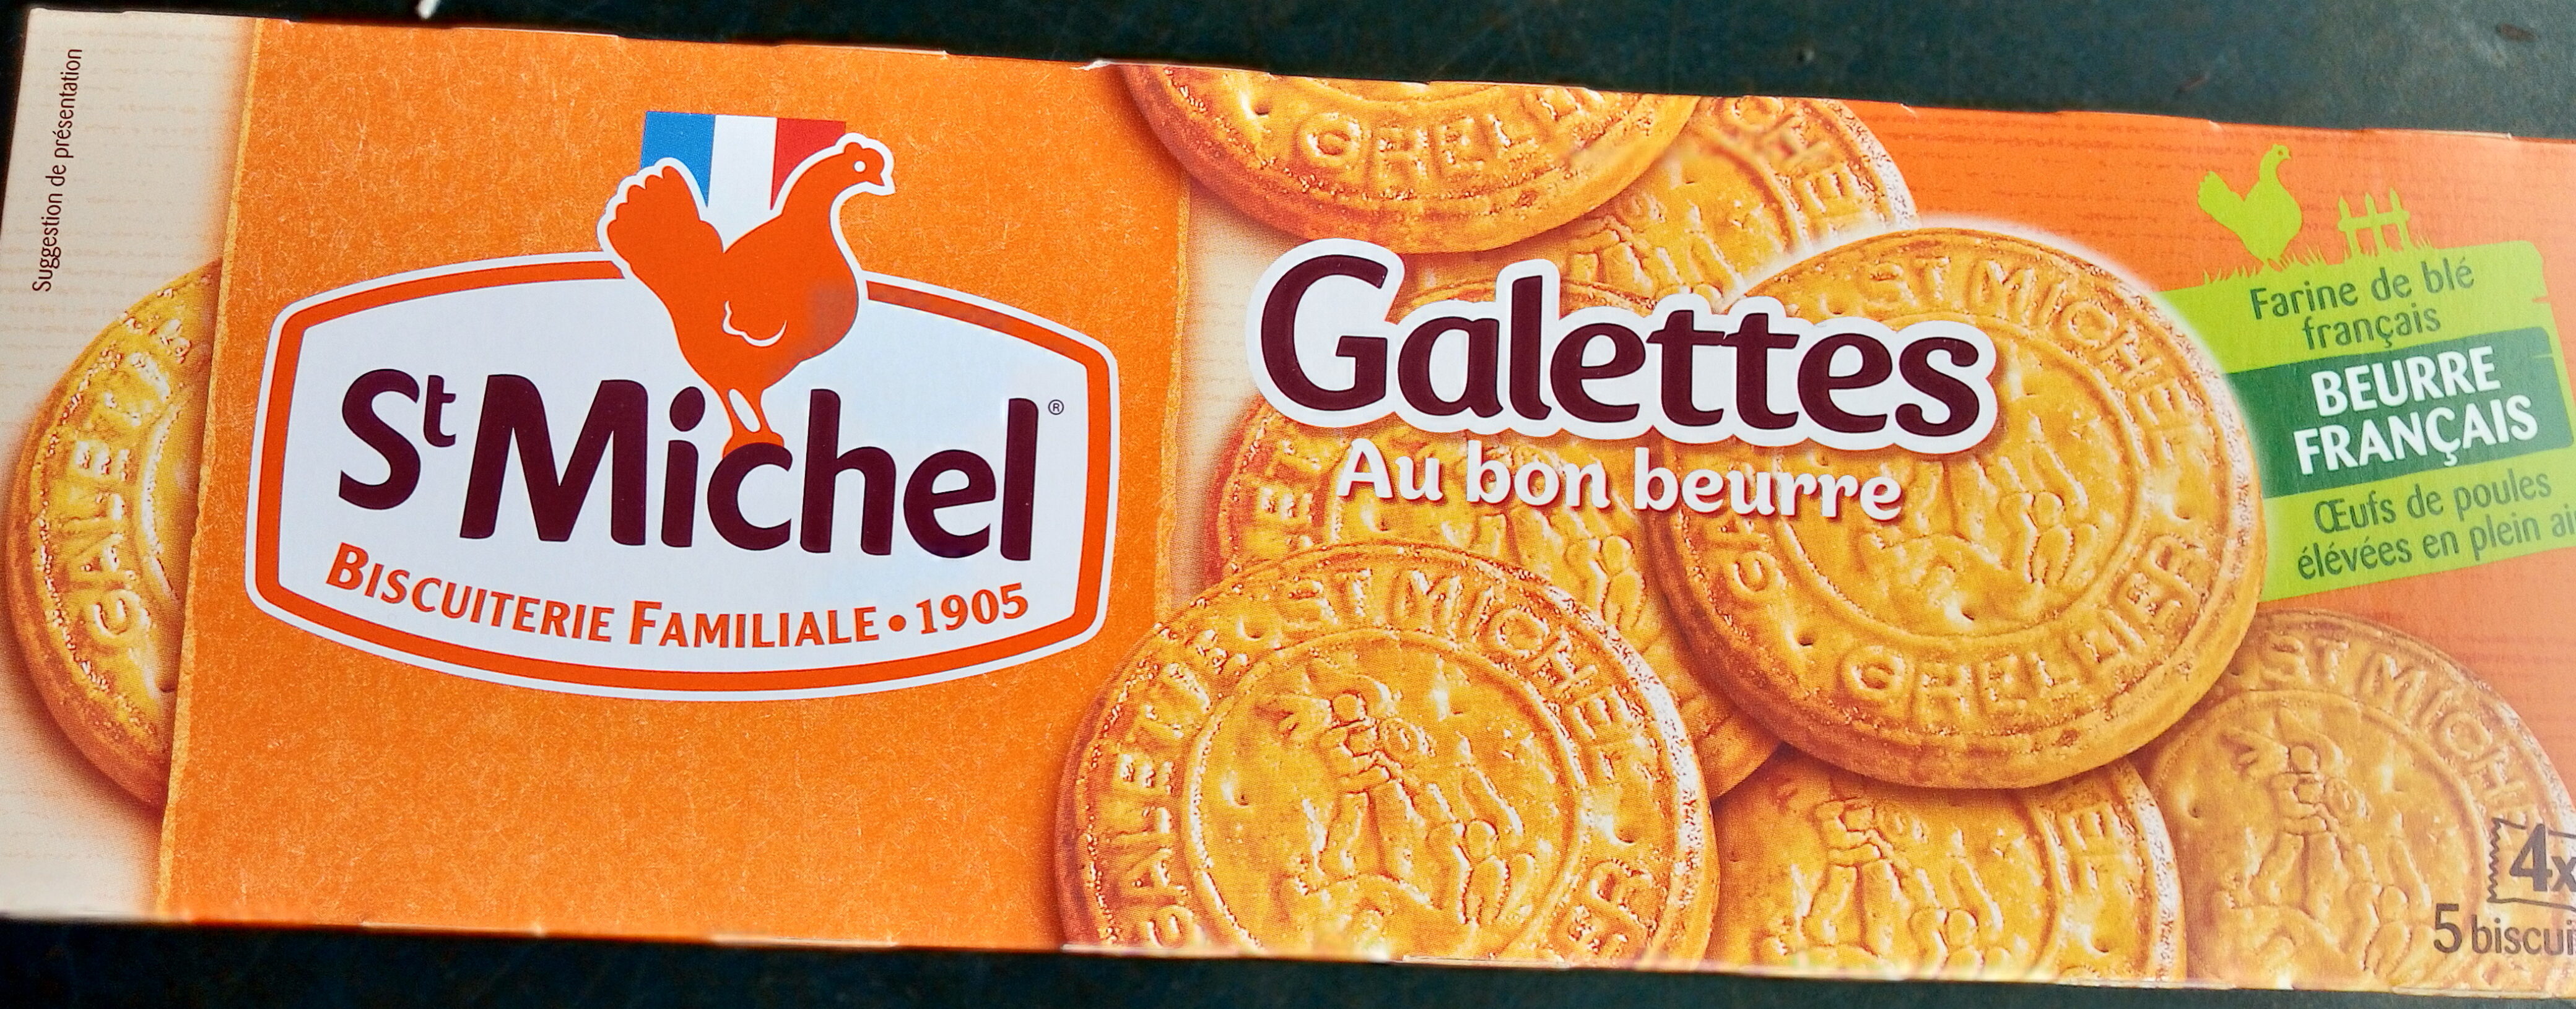 Galettes au bon beurre - Prodotto - fr